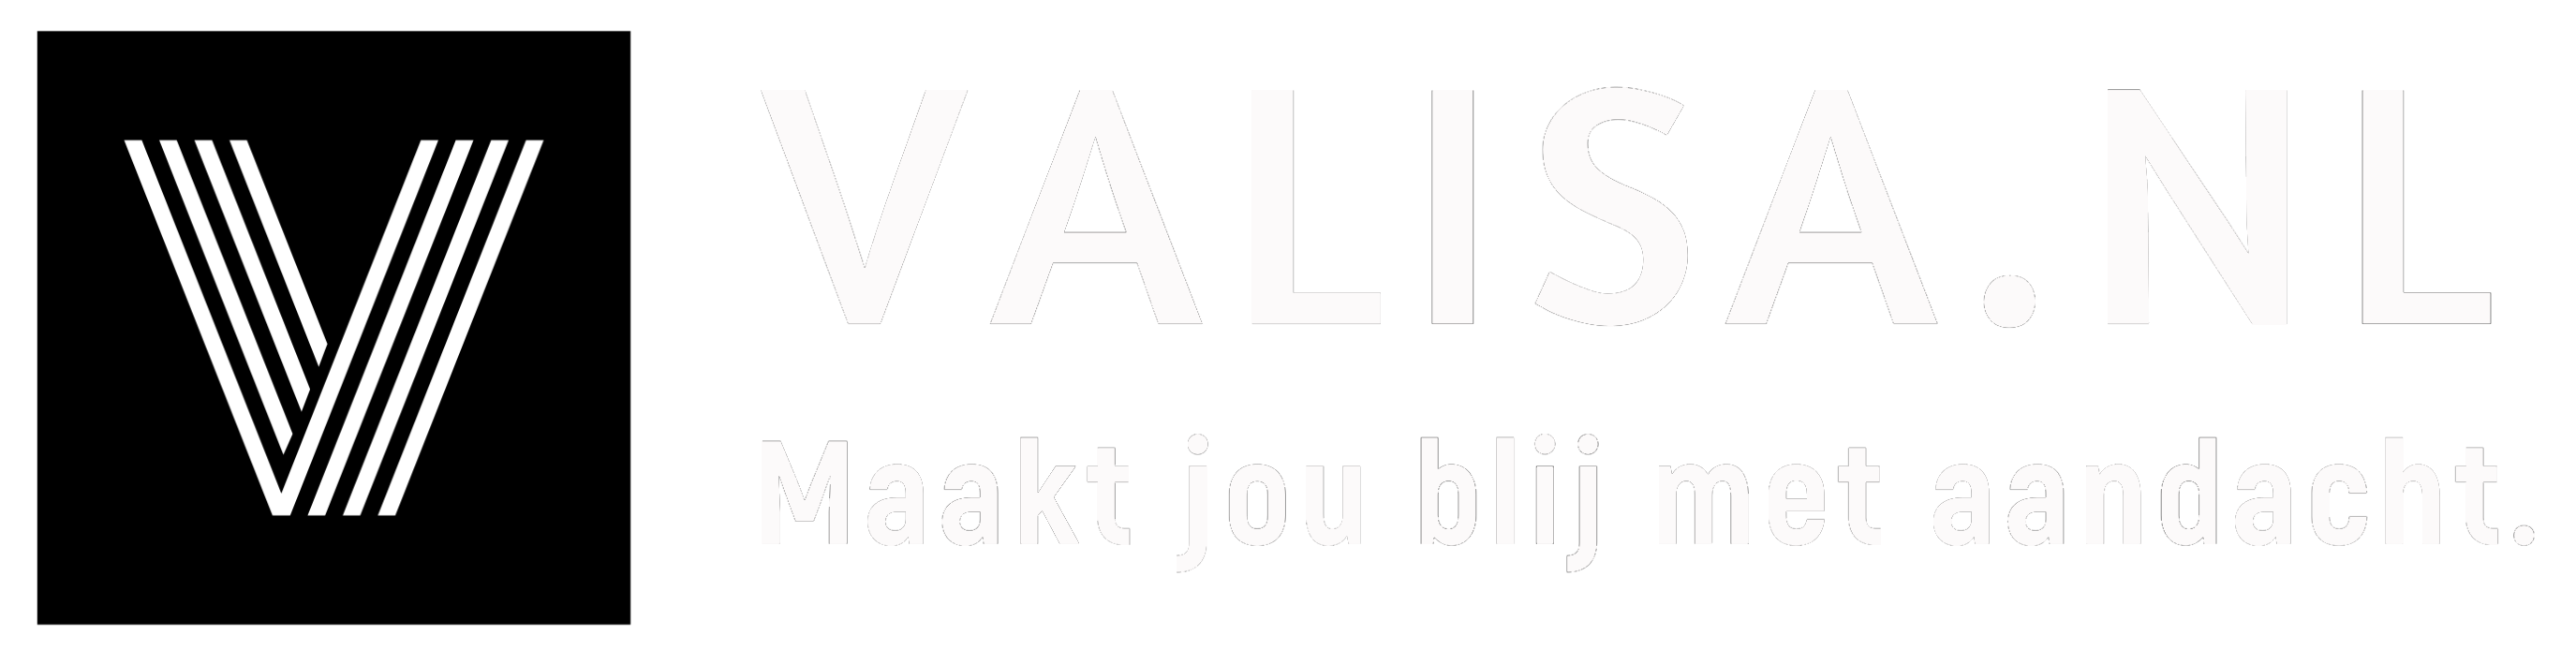 Valisa.nl